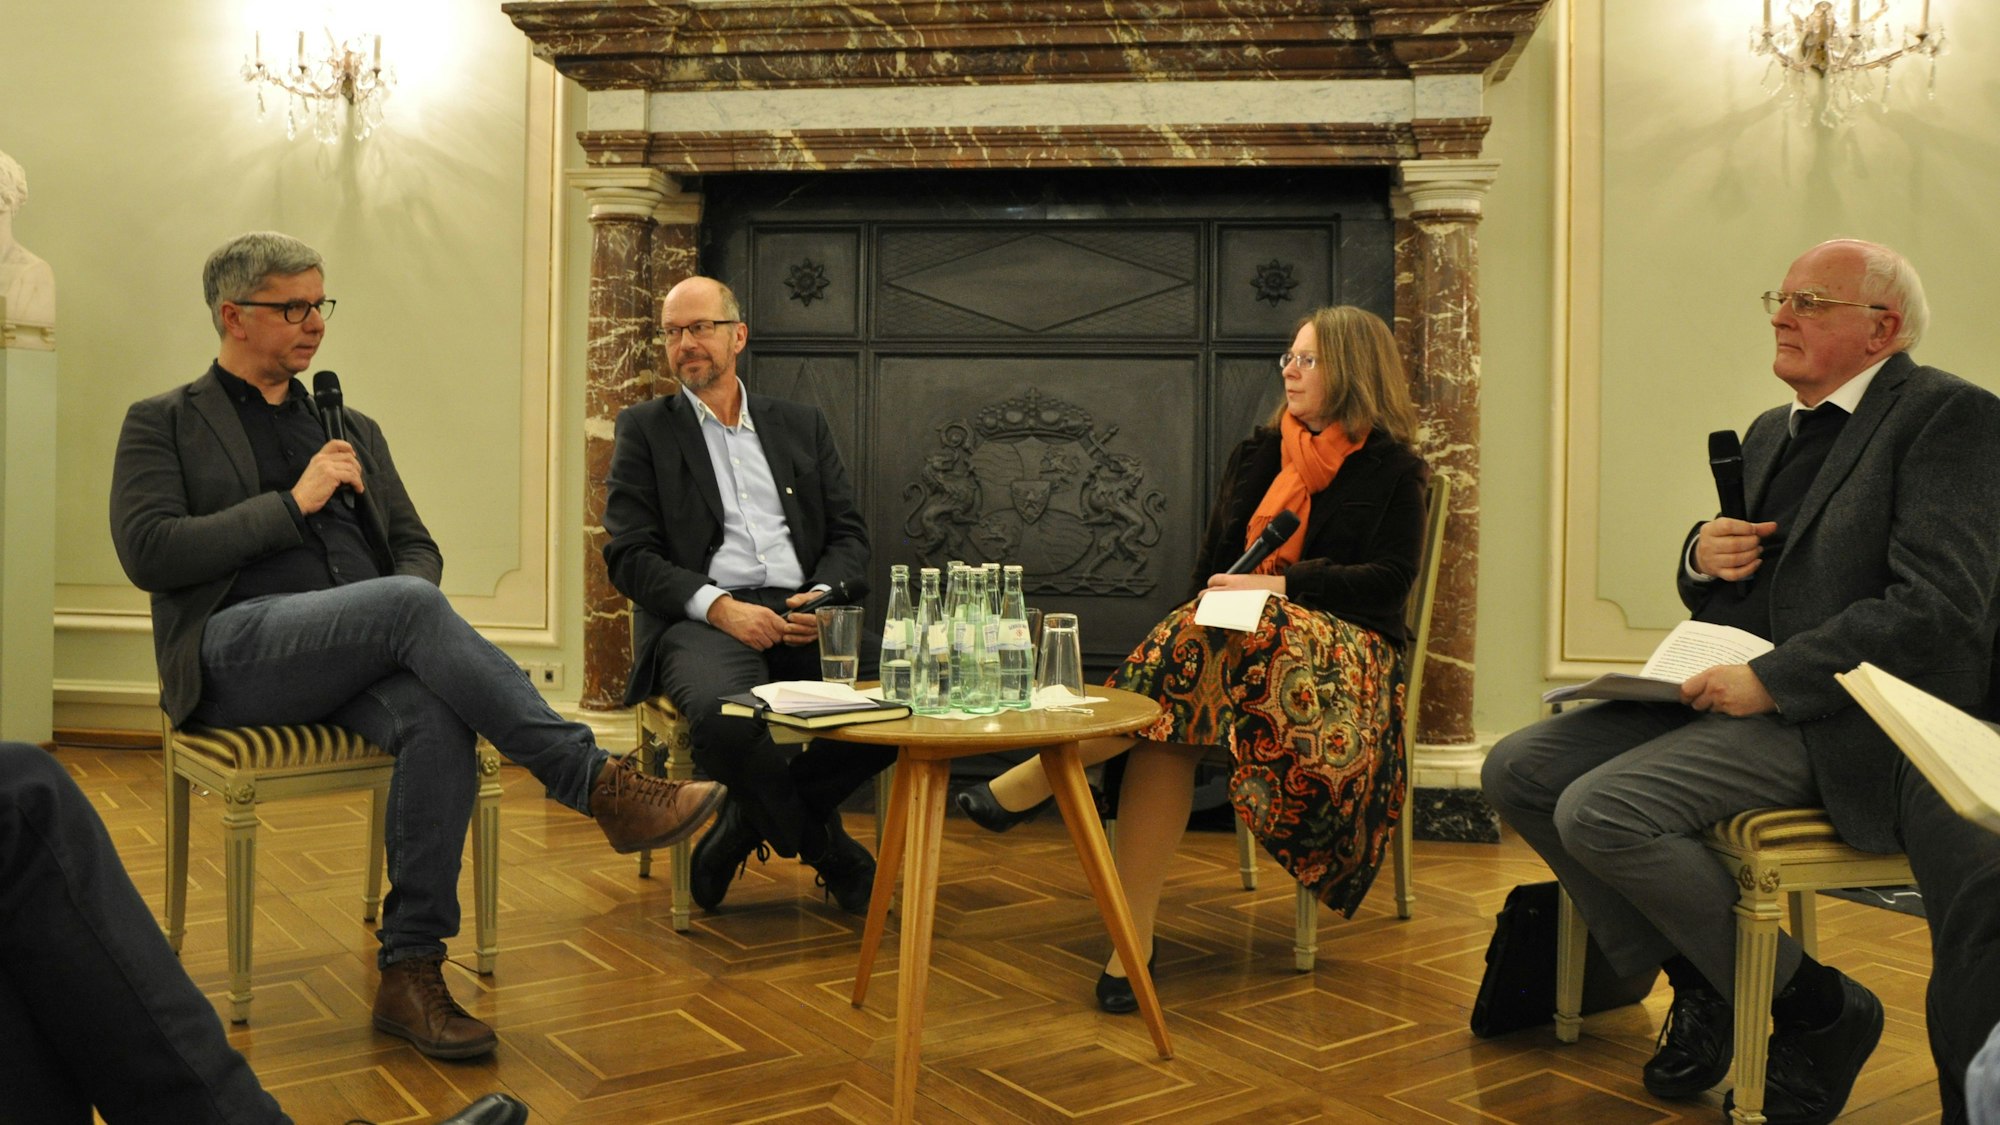 Die Professoren Magnus Striet, Clemens Albrecht, Cornelia Richter und Karl-Heinz Menke diskutieren im Festsaal der Universität Bonn